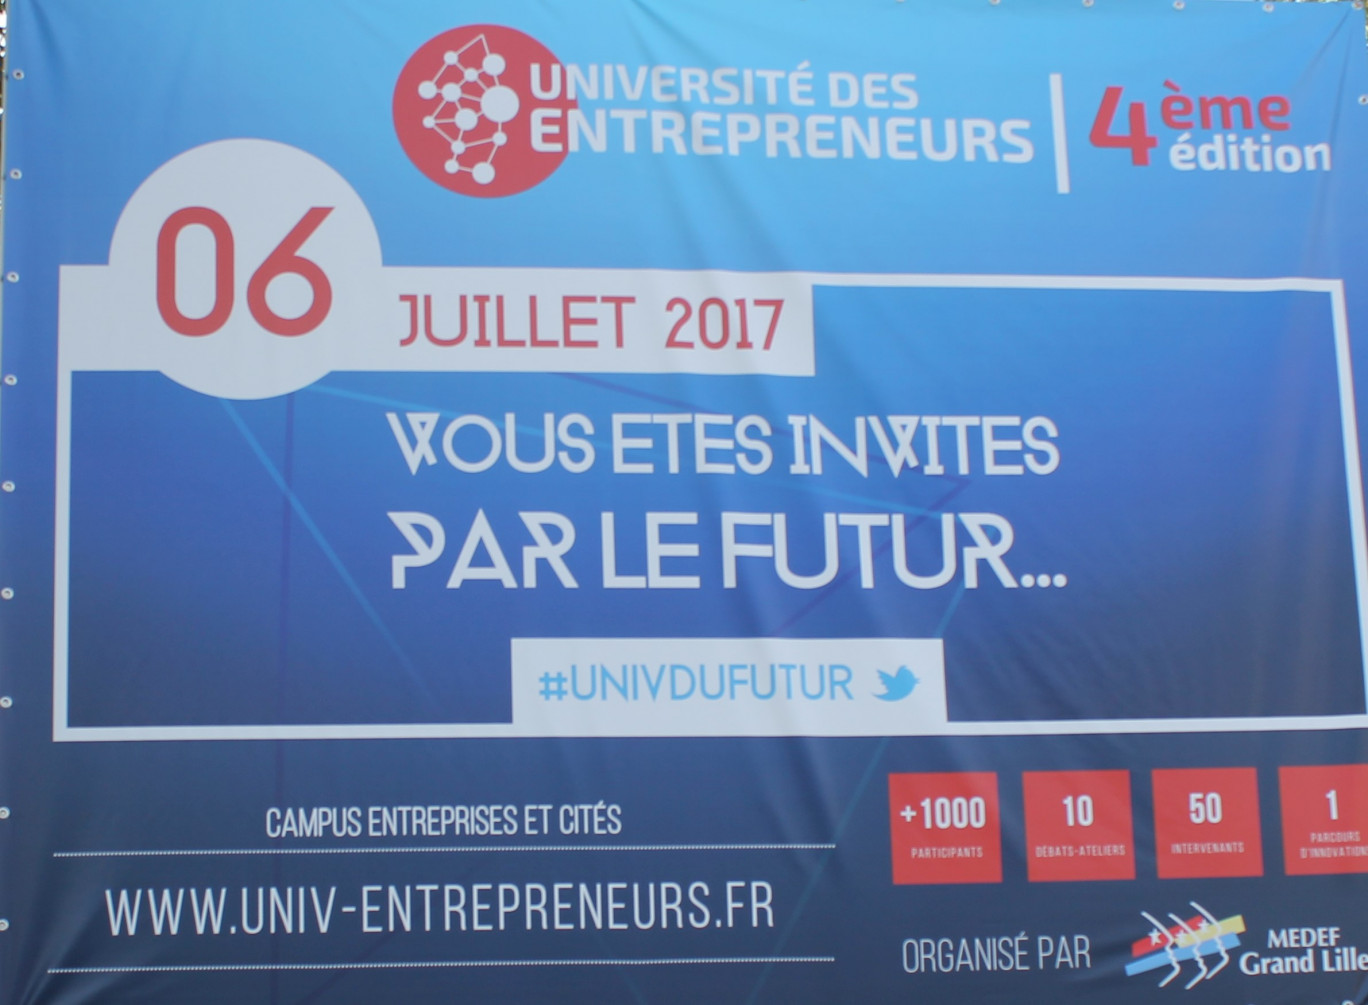 «Vous êtes invités par le futur...», thème de la 4ème Université des entrepreneurs